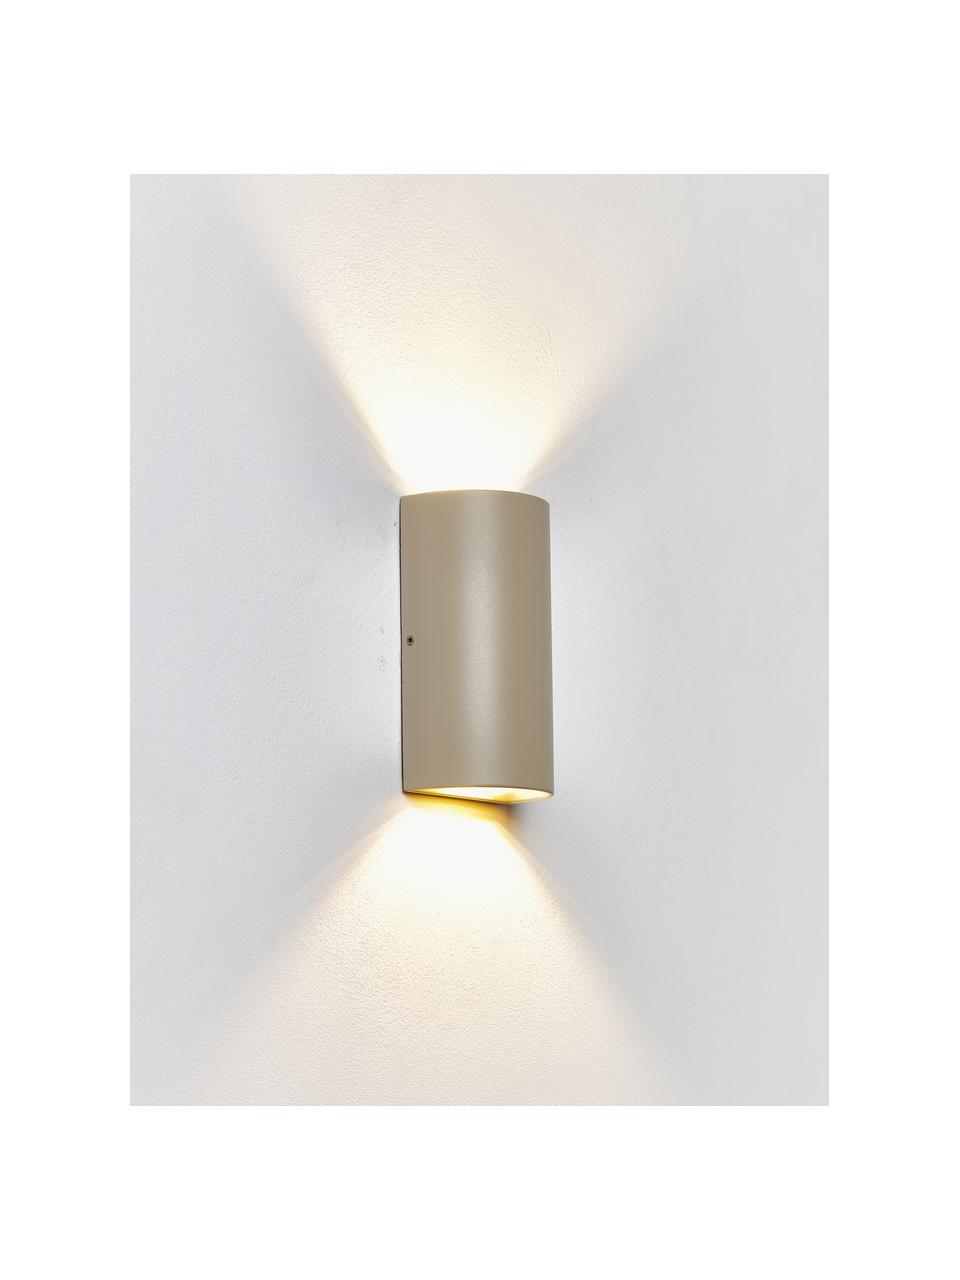 Outdoor wandlamp Rold, Lamp: metaal, gecoat, Diffuser: glas, Beige, Ø 9 x H 16 cm